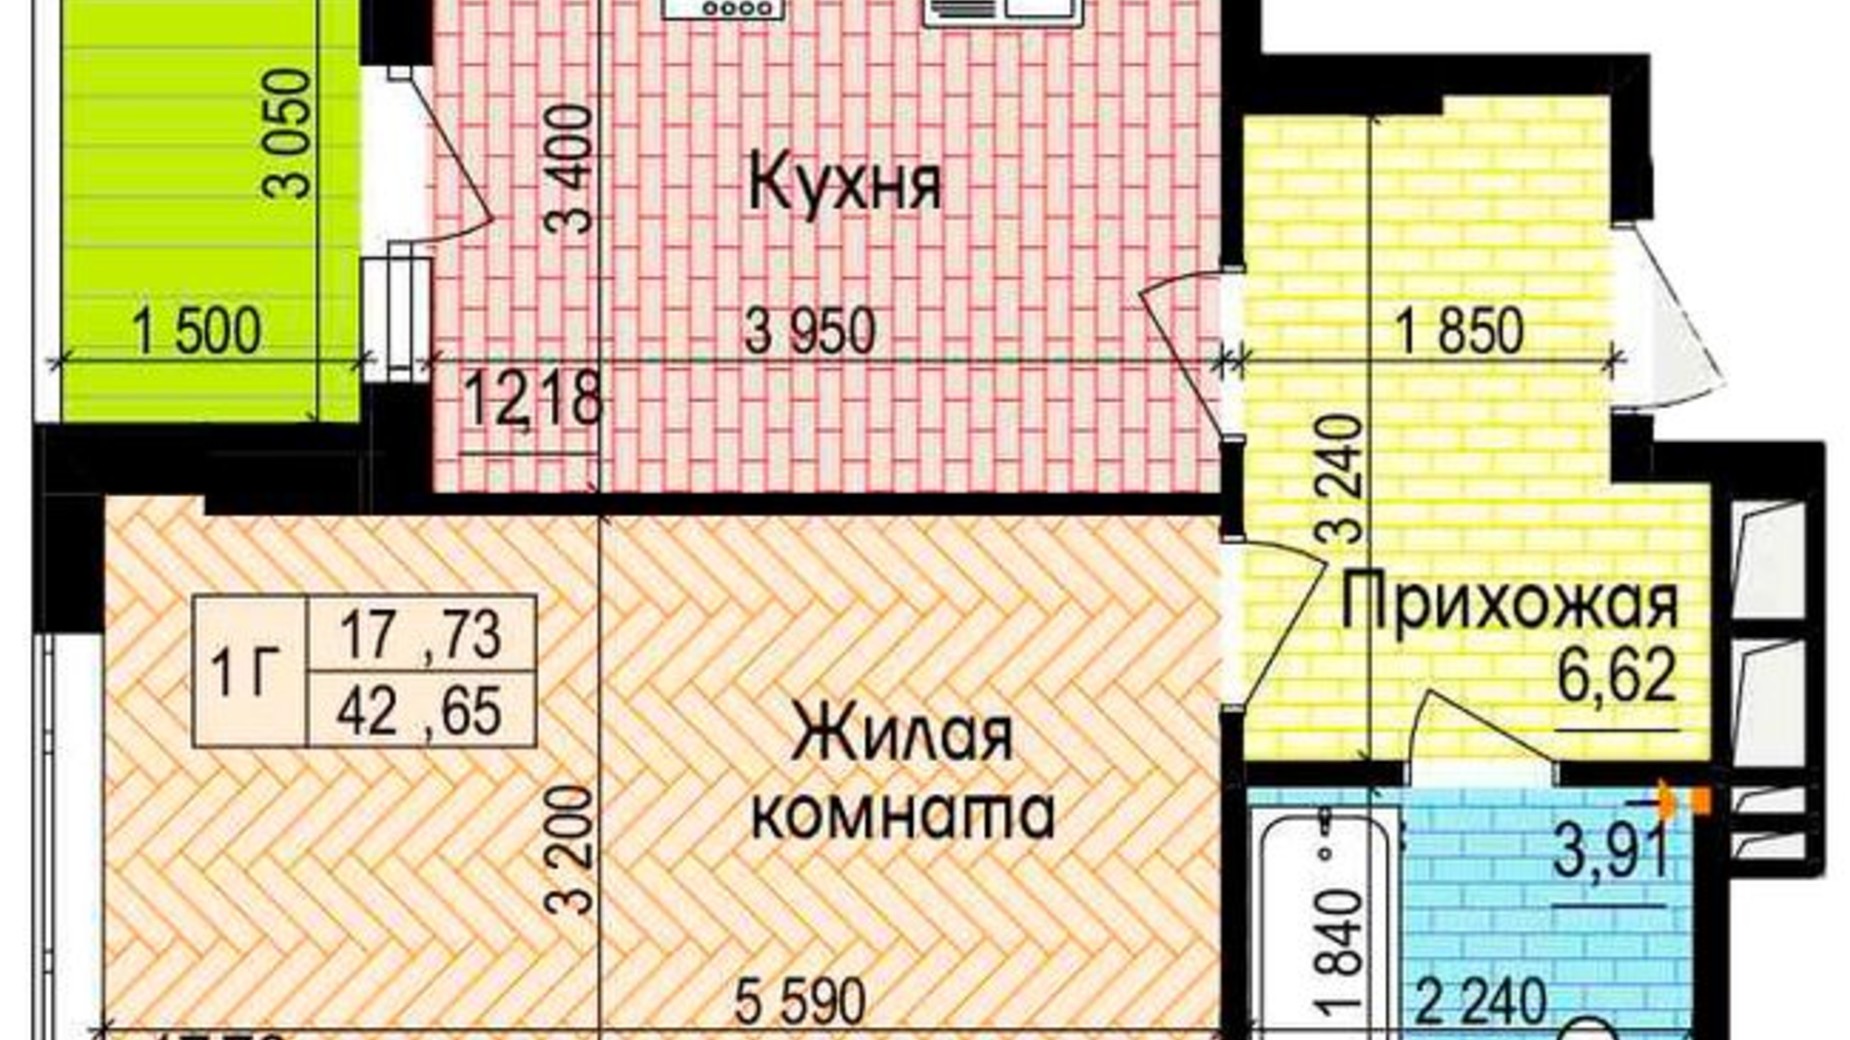 Планировка 1-комнатной квартиры в ЖК Пролисок 42.65 м², фото 341122